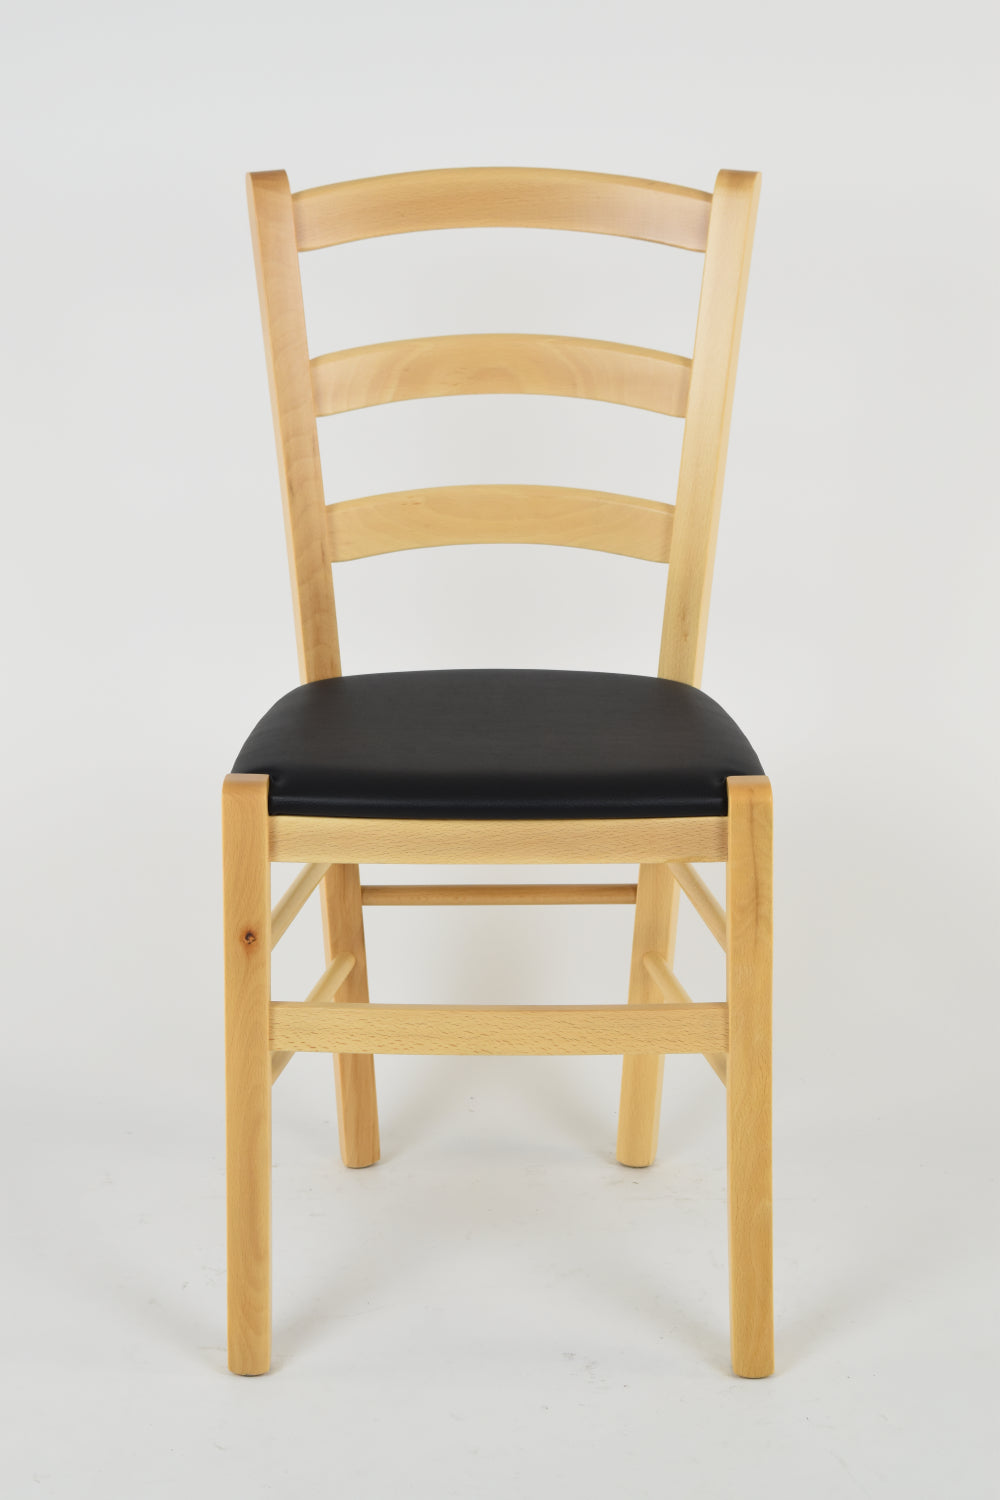 Tommychairs - Set 4 sillas de Cocina y Comedor Venice, Estructura en Madera de Haya Color Natural y Asiento tapizado en Polipiel Color Negro